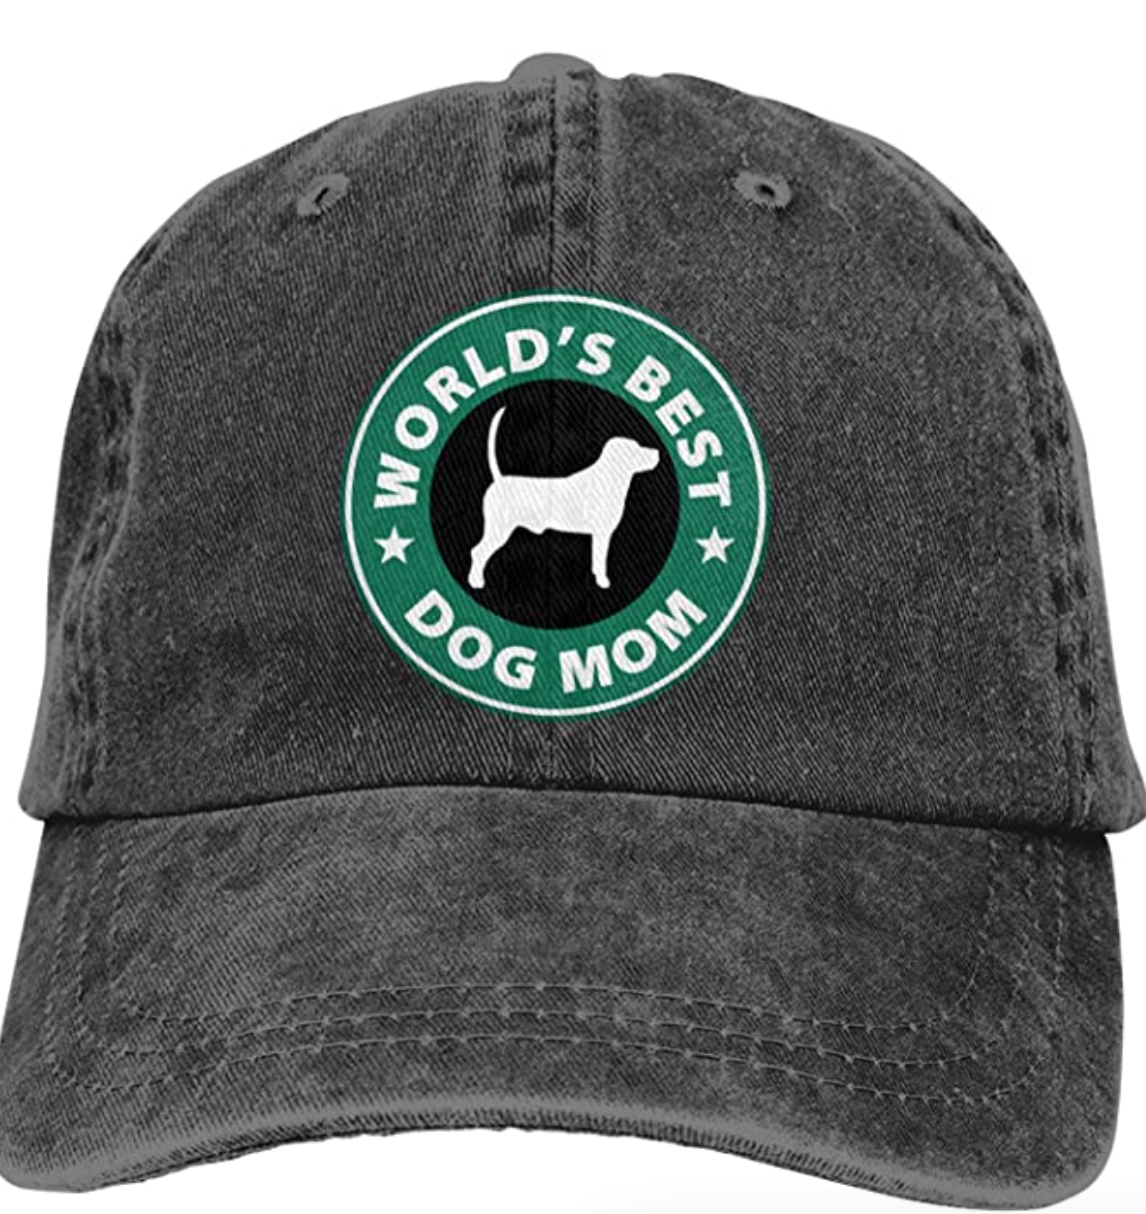 Denim Baseball Caps Hat,World's Best Dog Mom,Adjustable Sport Strap Cap for Men Women